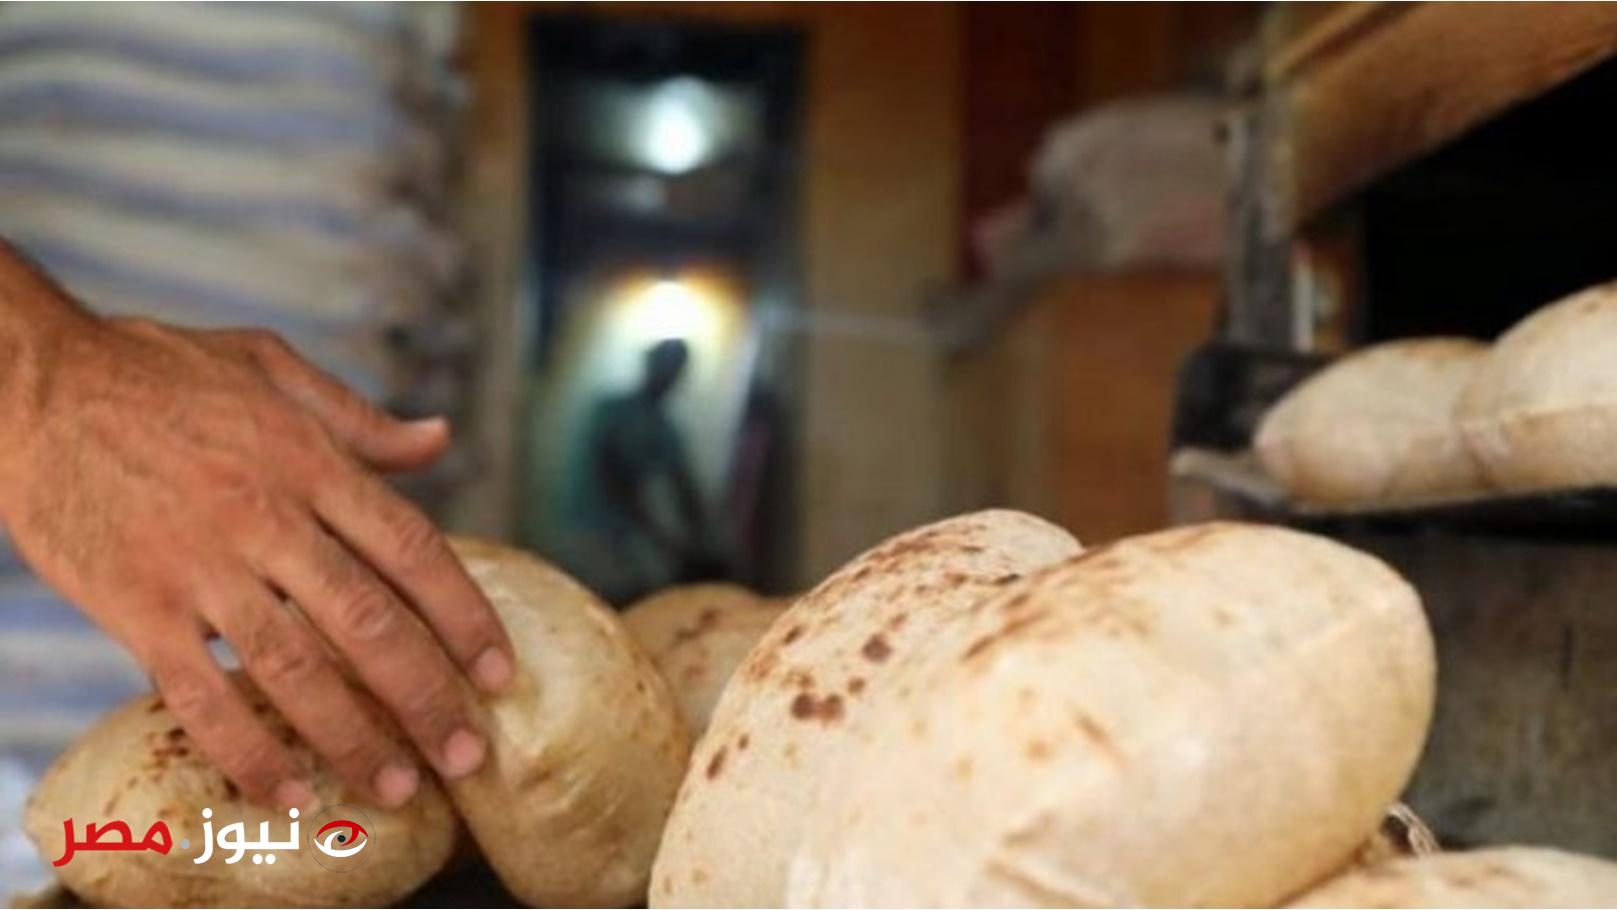 وزير التموين يتفق مبدئيا مع أصحاب المخبز على سعر الخبز الحر